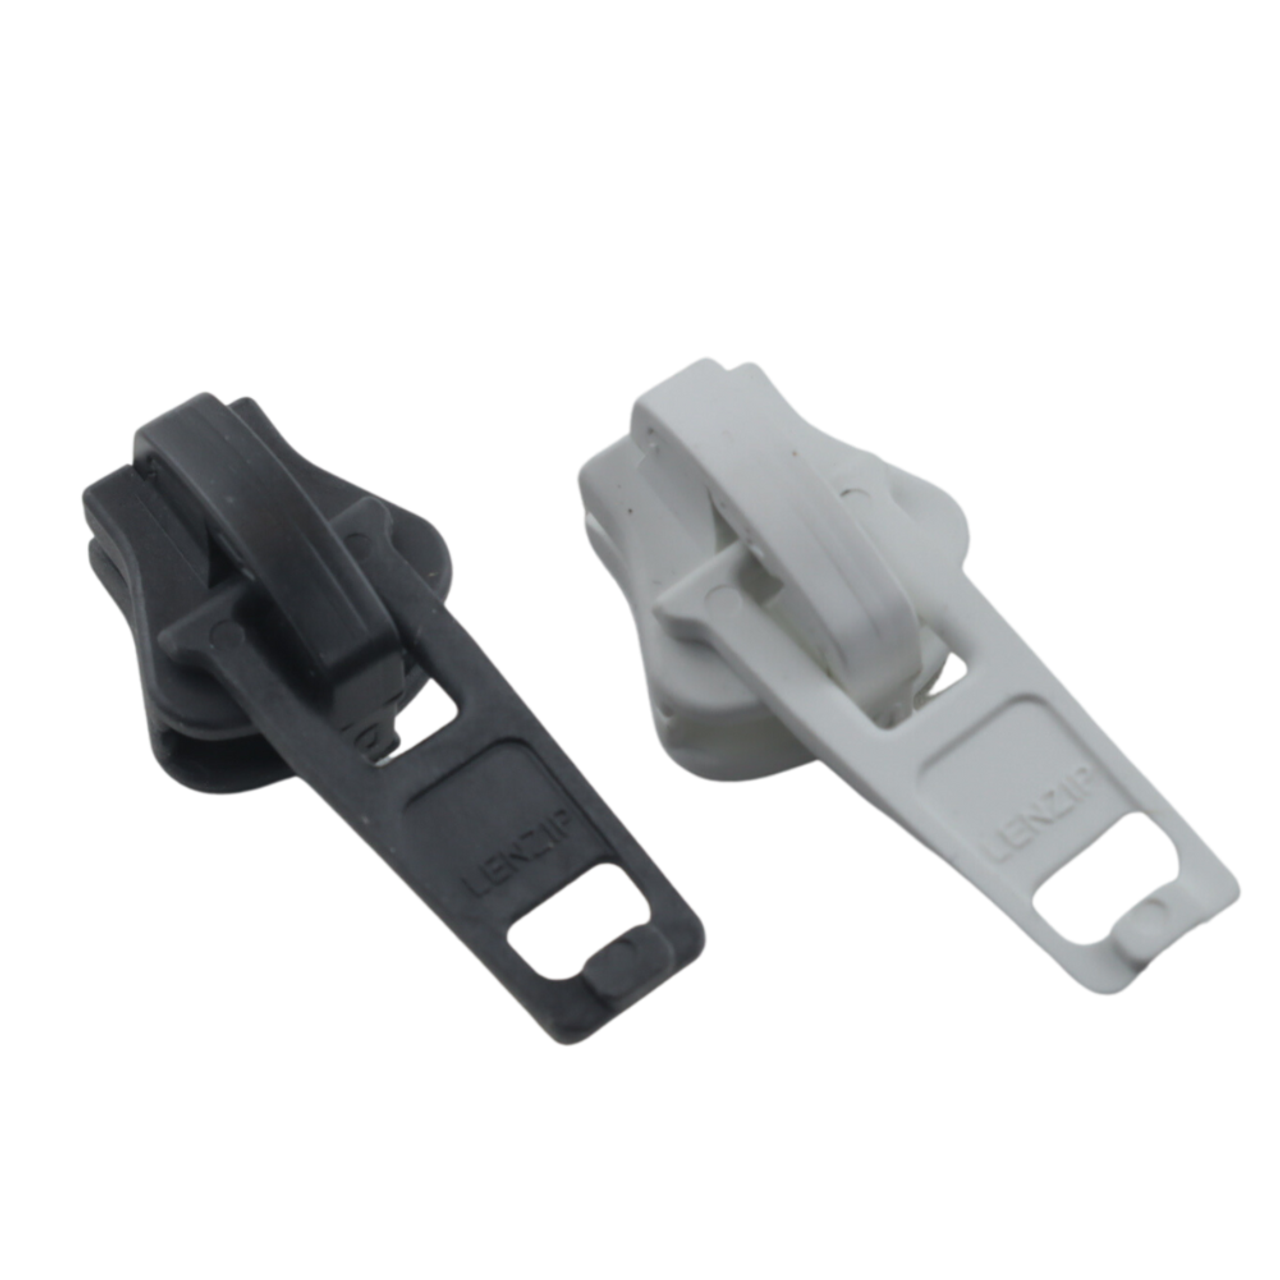 Zipper Sliders YKK or Lenzip - Plastic Vislon #10 Locking - Single Pull